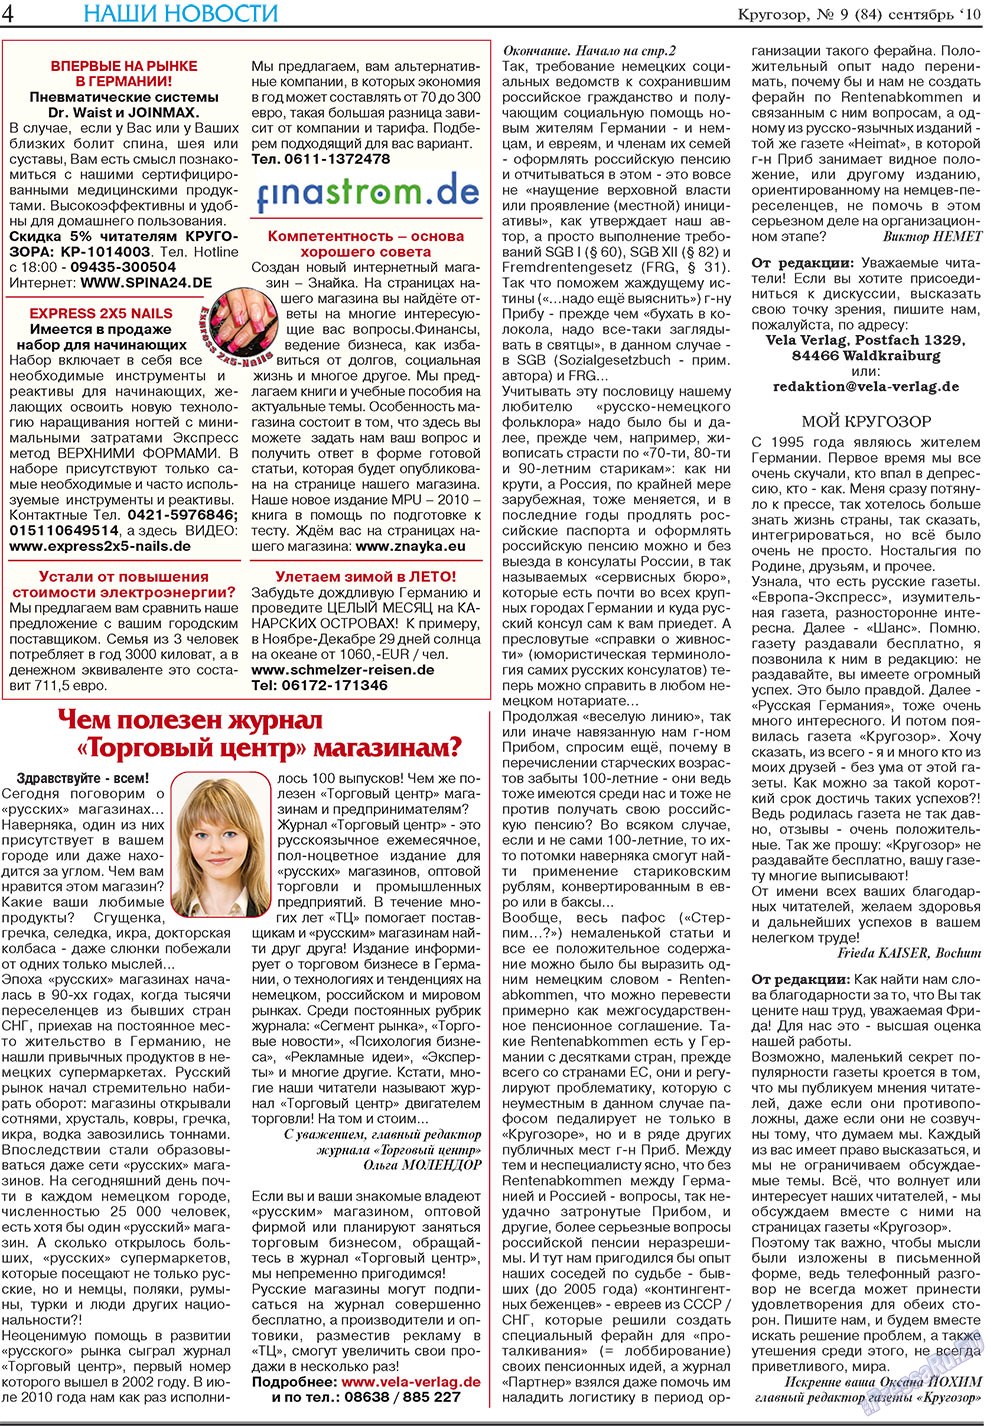 Кругозор плюс!, газета. 2010 №9 стр.4